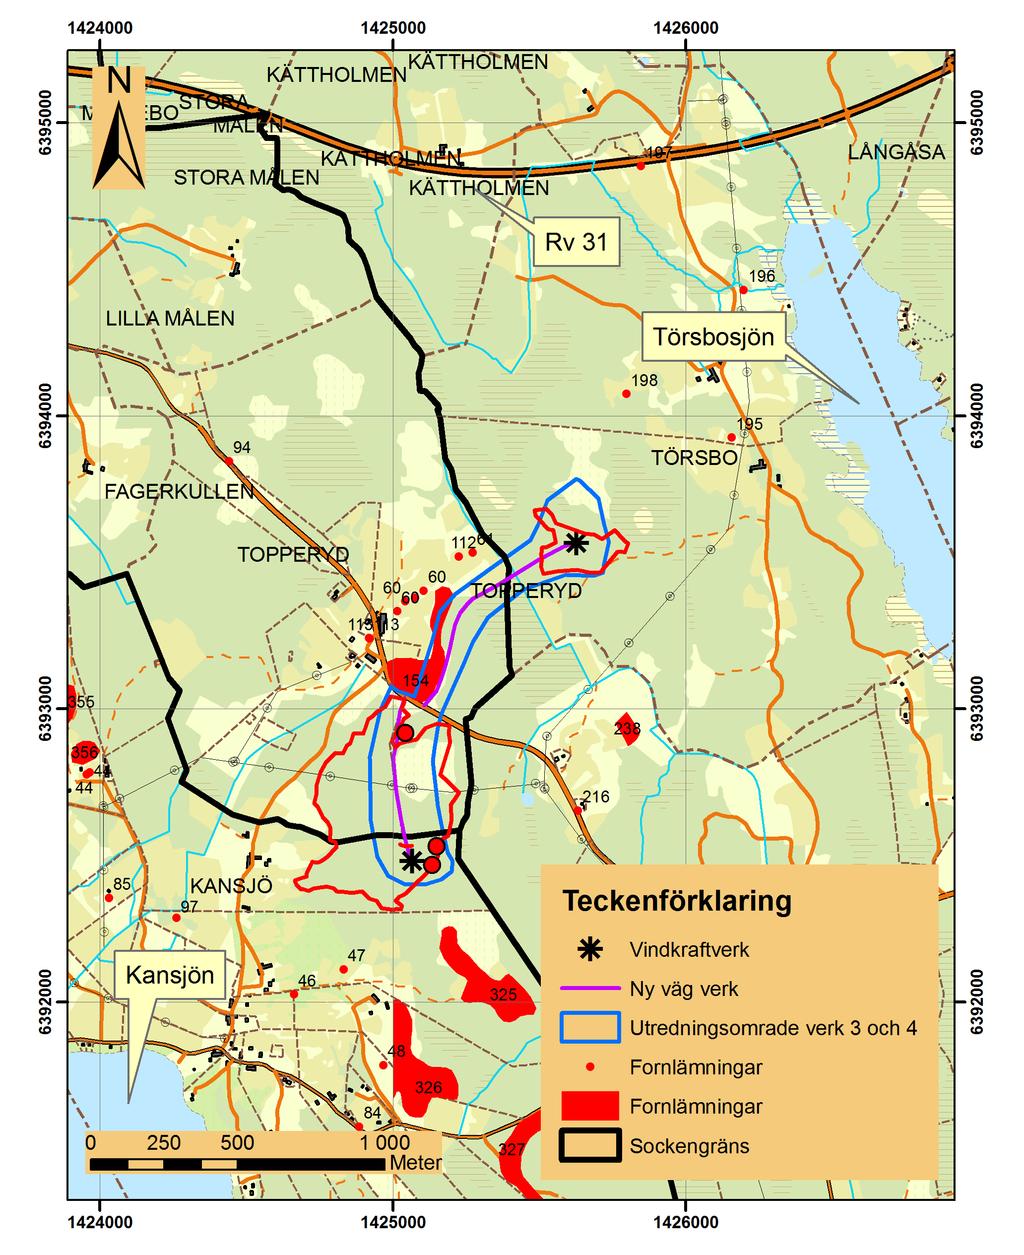 figur 1. Utdrag ur digitala fastighetskartan över området kring Topperyd.